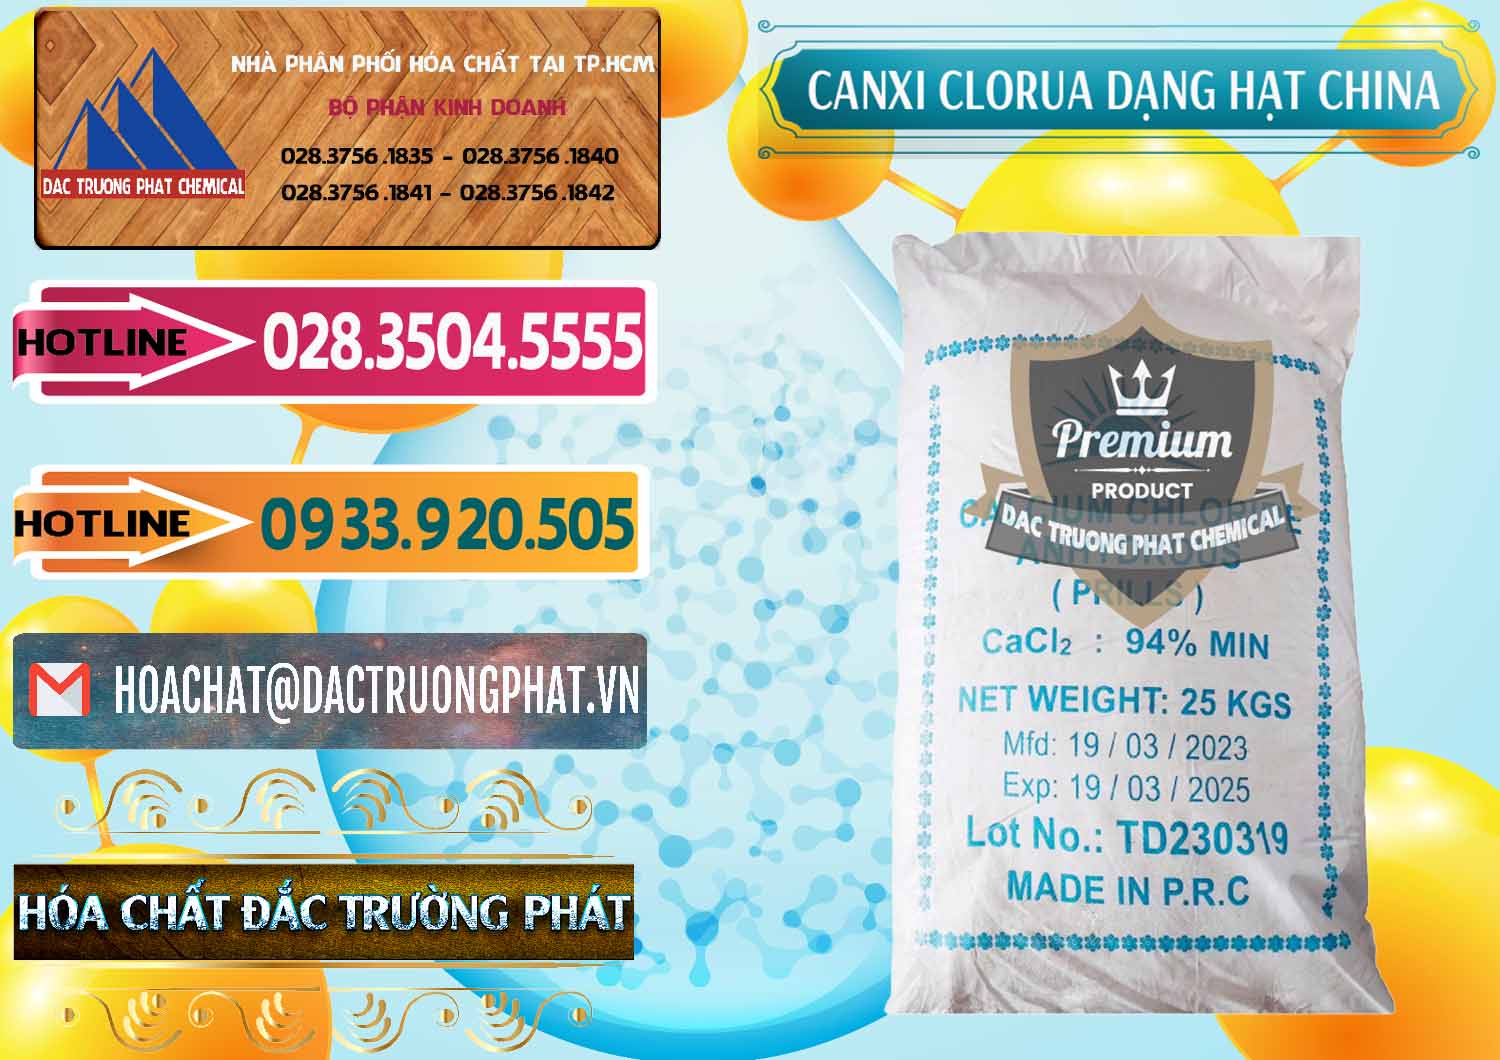 Nơi phân phối ( bán ) CaCl2 – Canxi Clorua 94% Dạng Hạt Trung Quốc China - 0373 - Nơi chuyên bán _ phân phối hóa chất tại TP.HCM - dactruongphat.vn